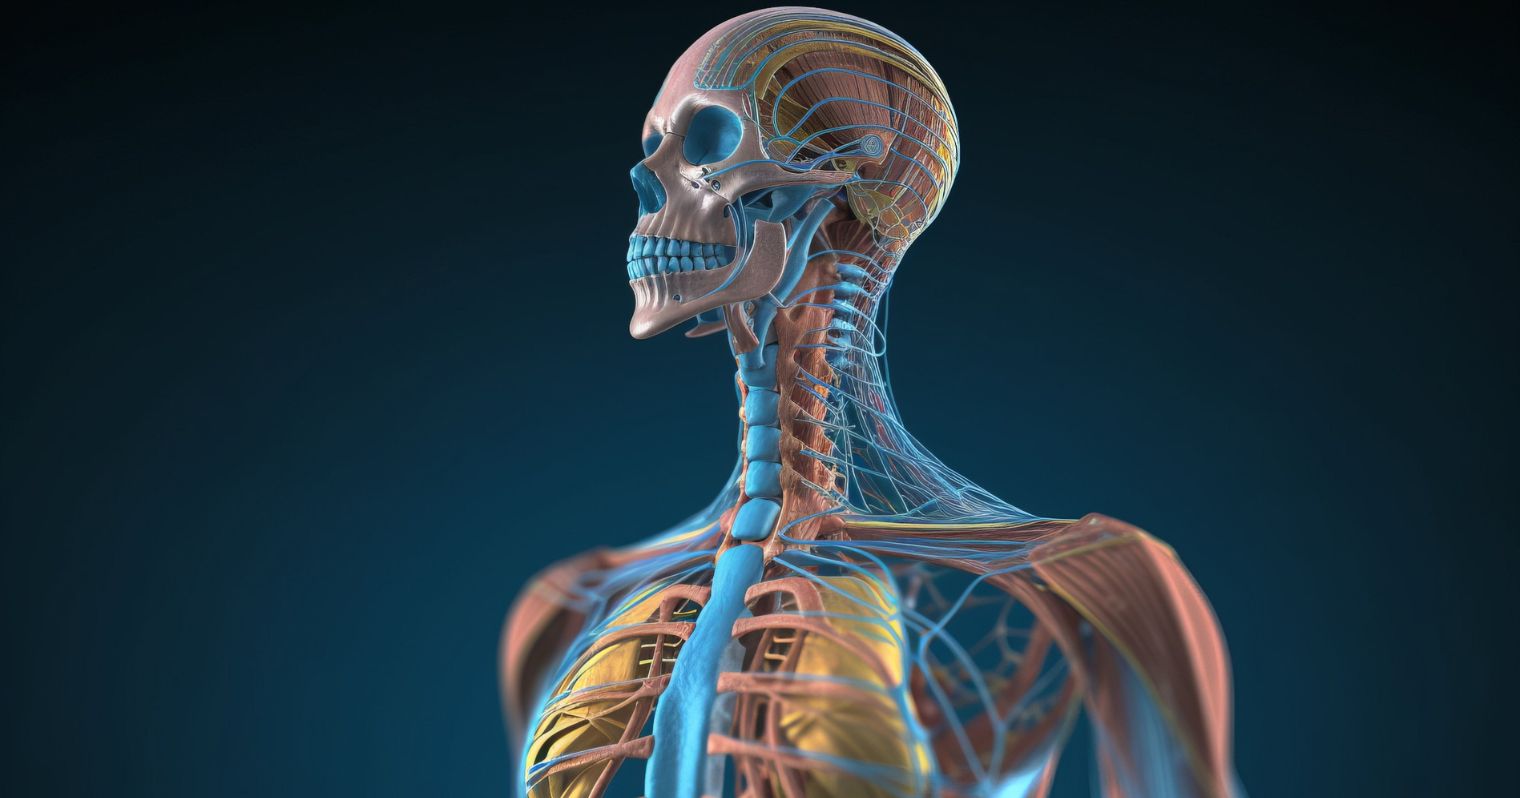 Az emberi test csontjai láthatók a képen